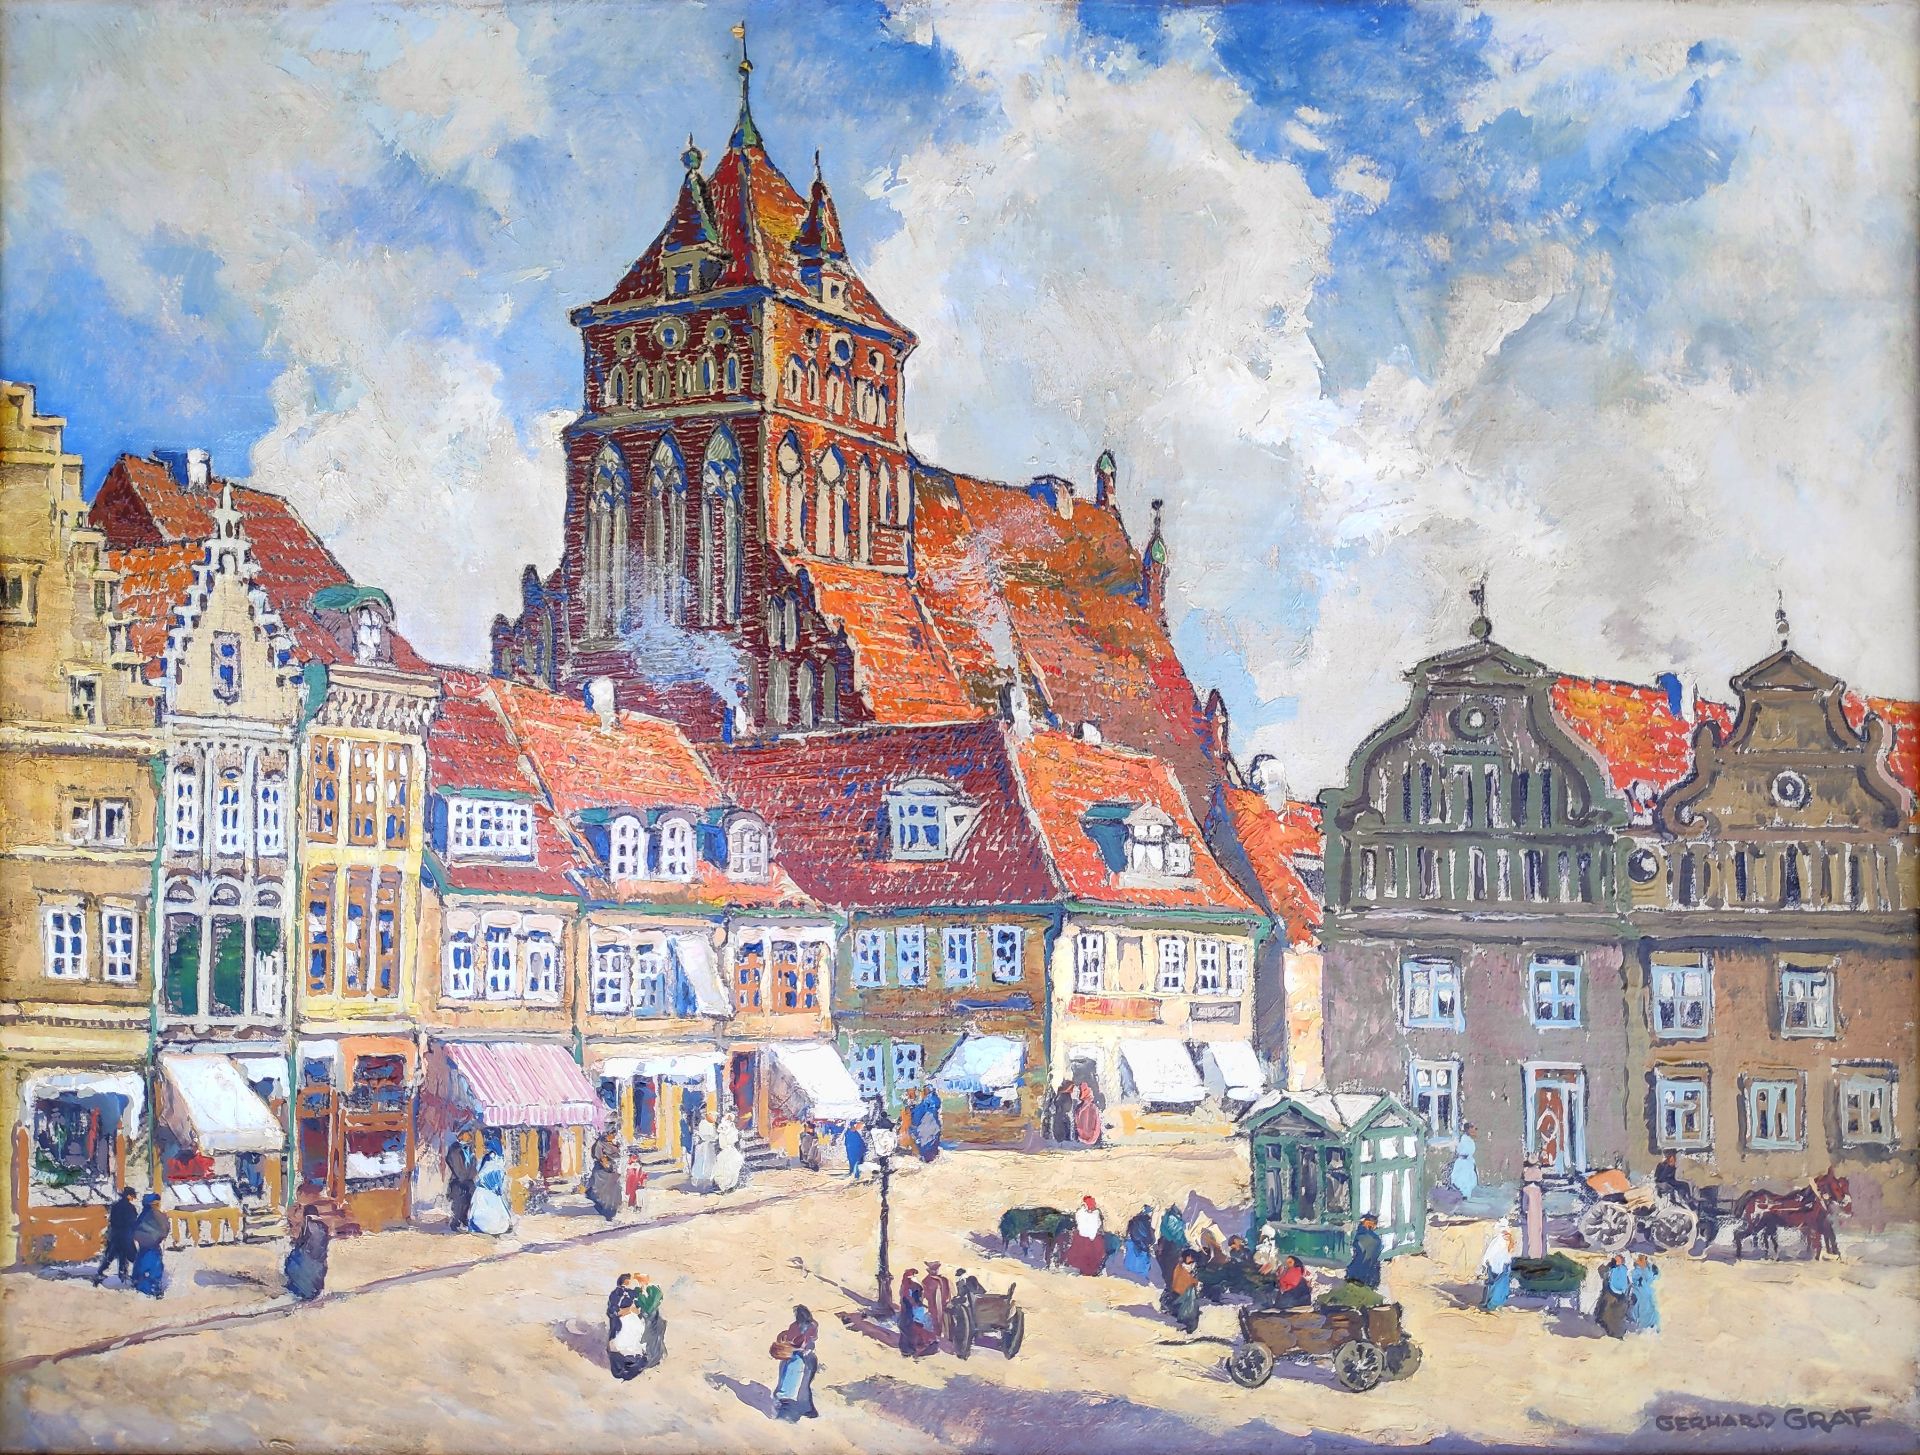 Graf, Gerhard (1883 Berlin - 1958 Stockholm) "Markt in Greifswald mit Blick auf St. Marien"